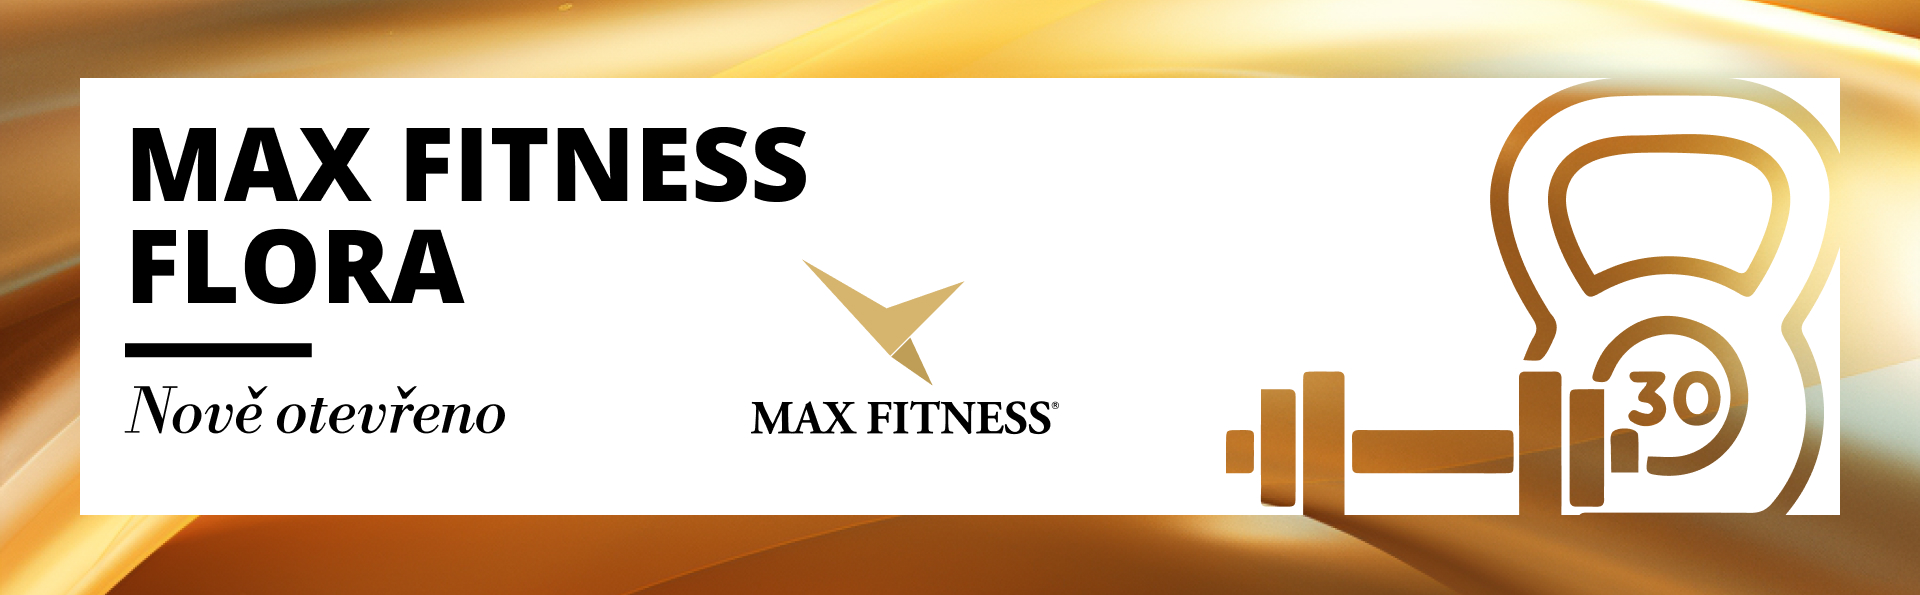 Nově otevřené Max Fitness